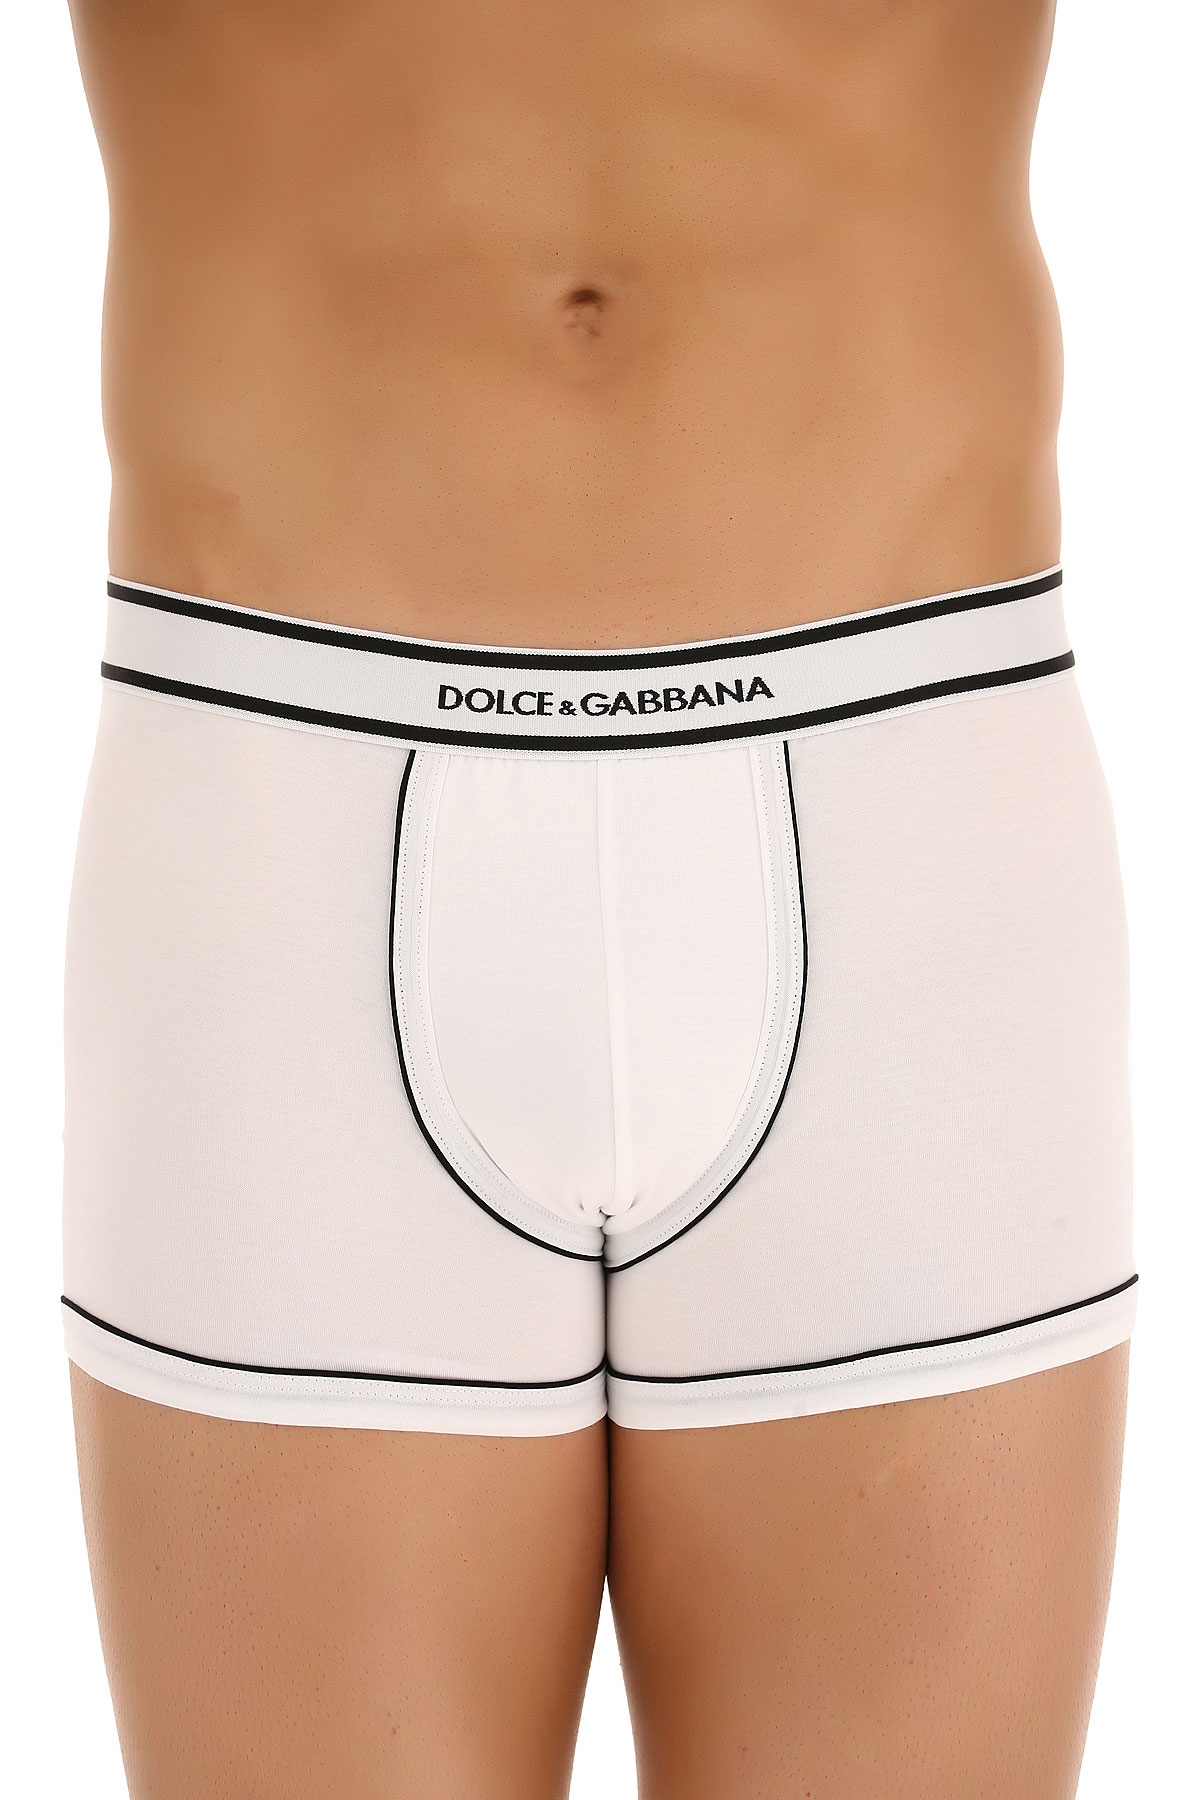 Dolce & Gabbana Caleçon Boxer Homme, Boxer, Blanc, Coton, 2017, L M S XL